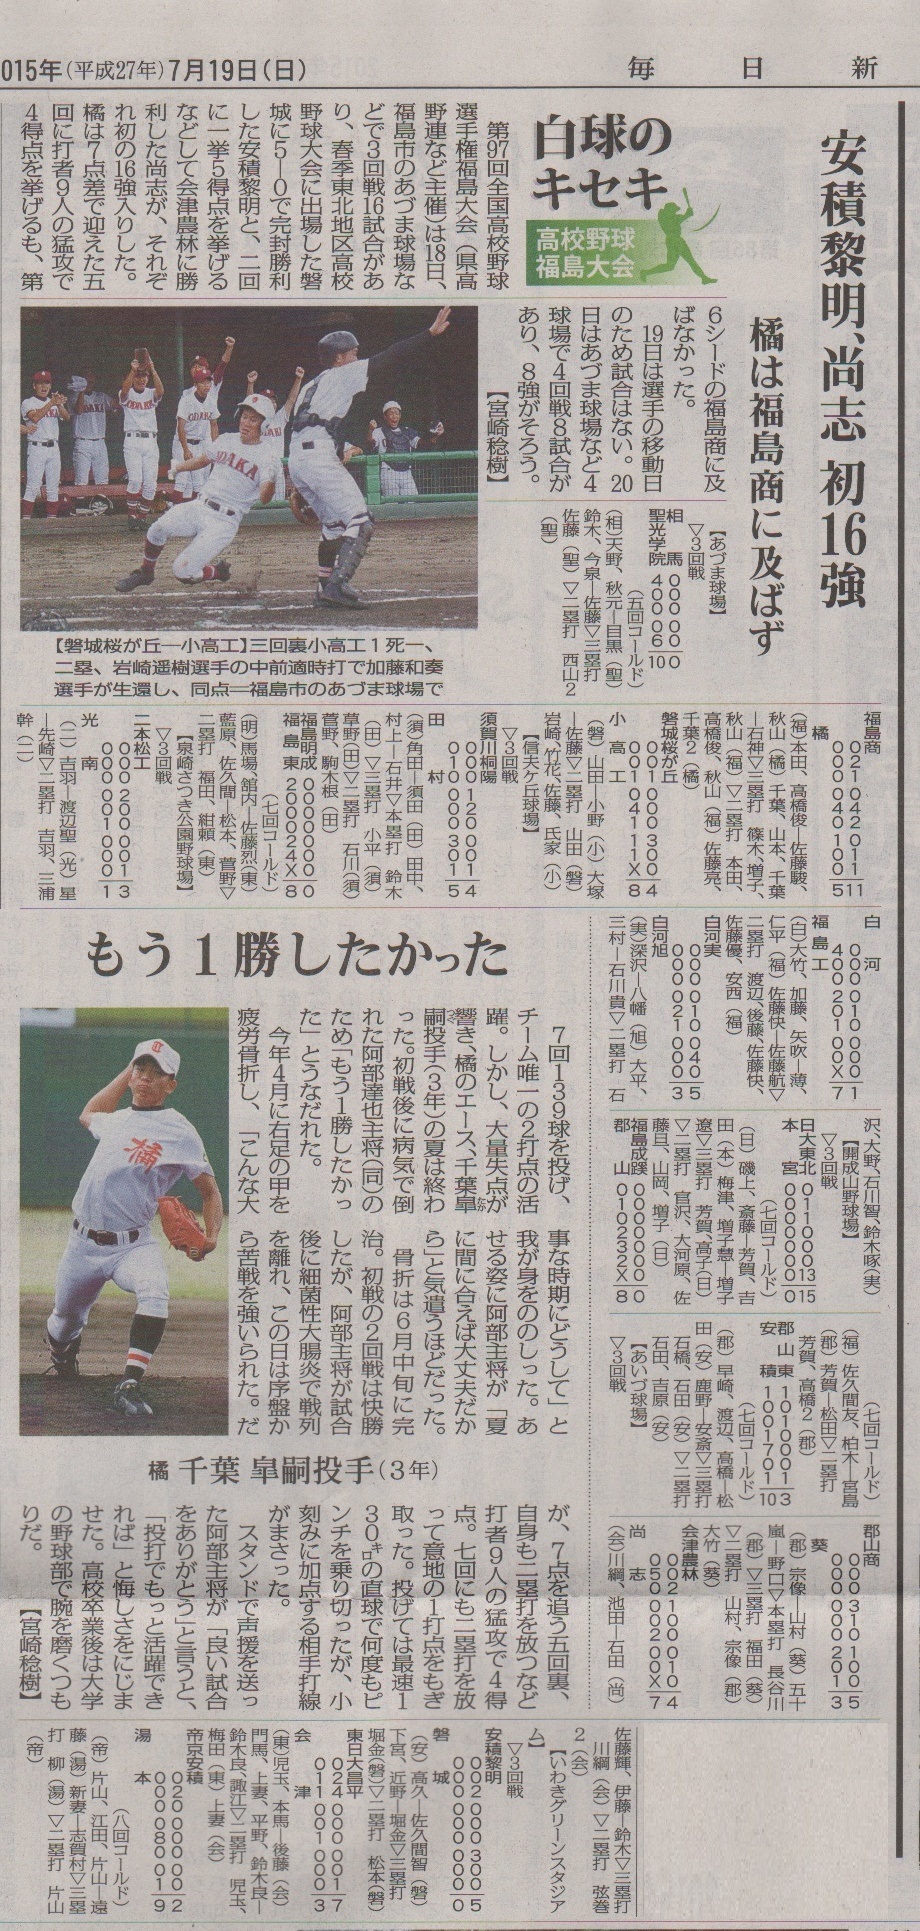 http://www2.shoshi.ed.jp/club/2015.07.19_mainichi_article.jpg